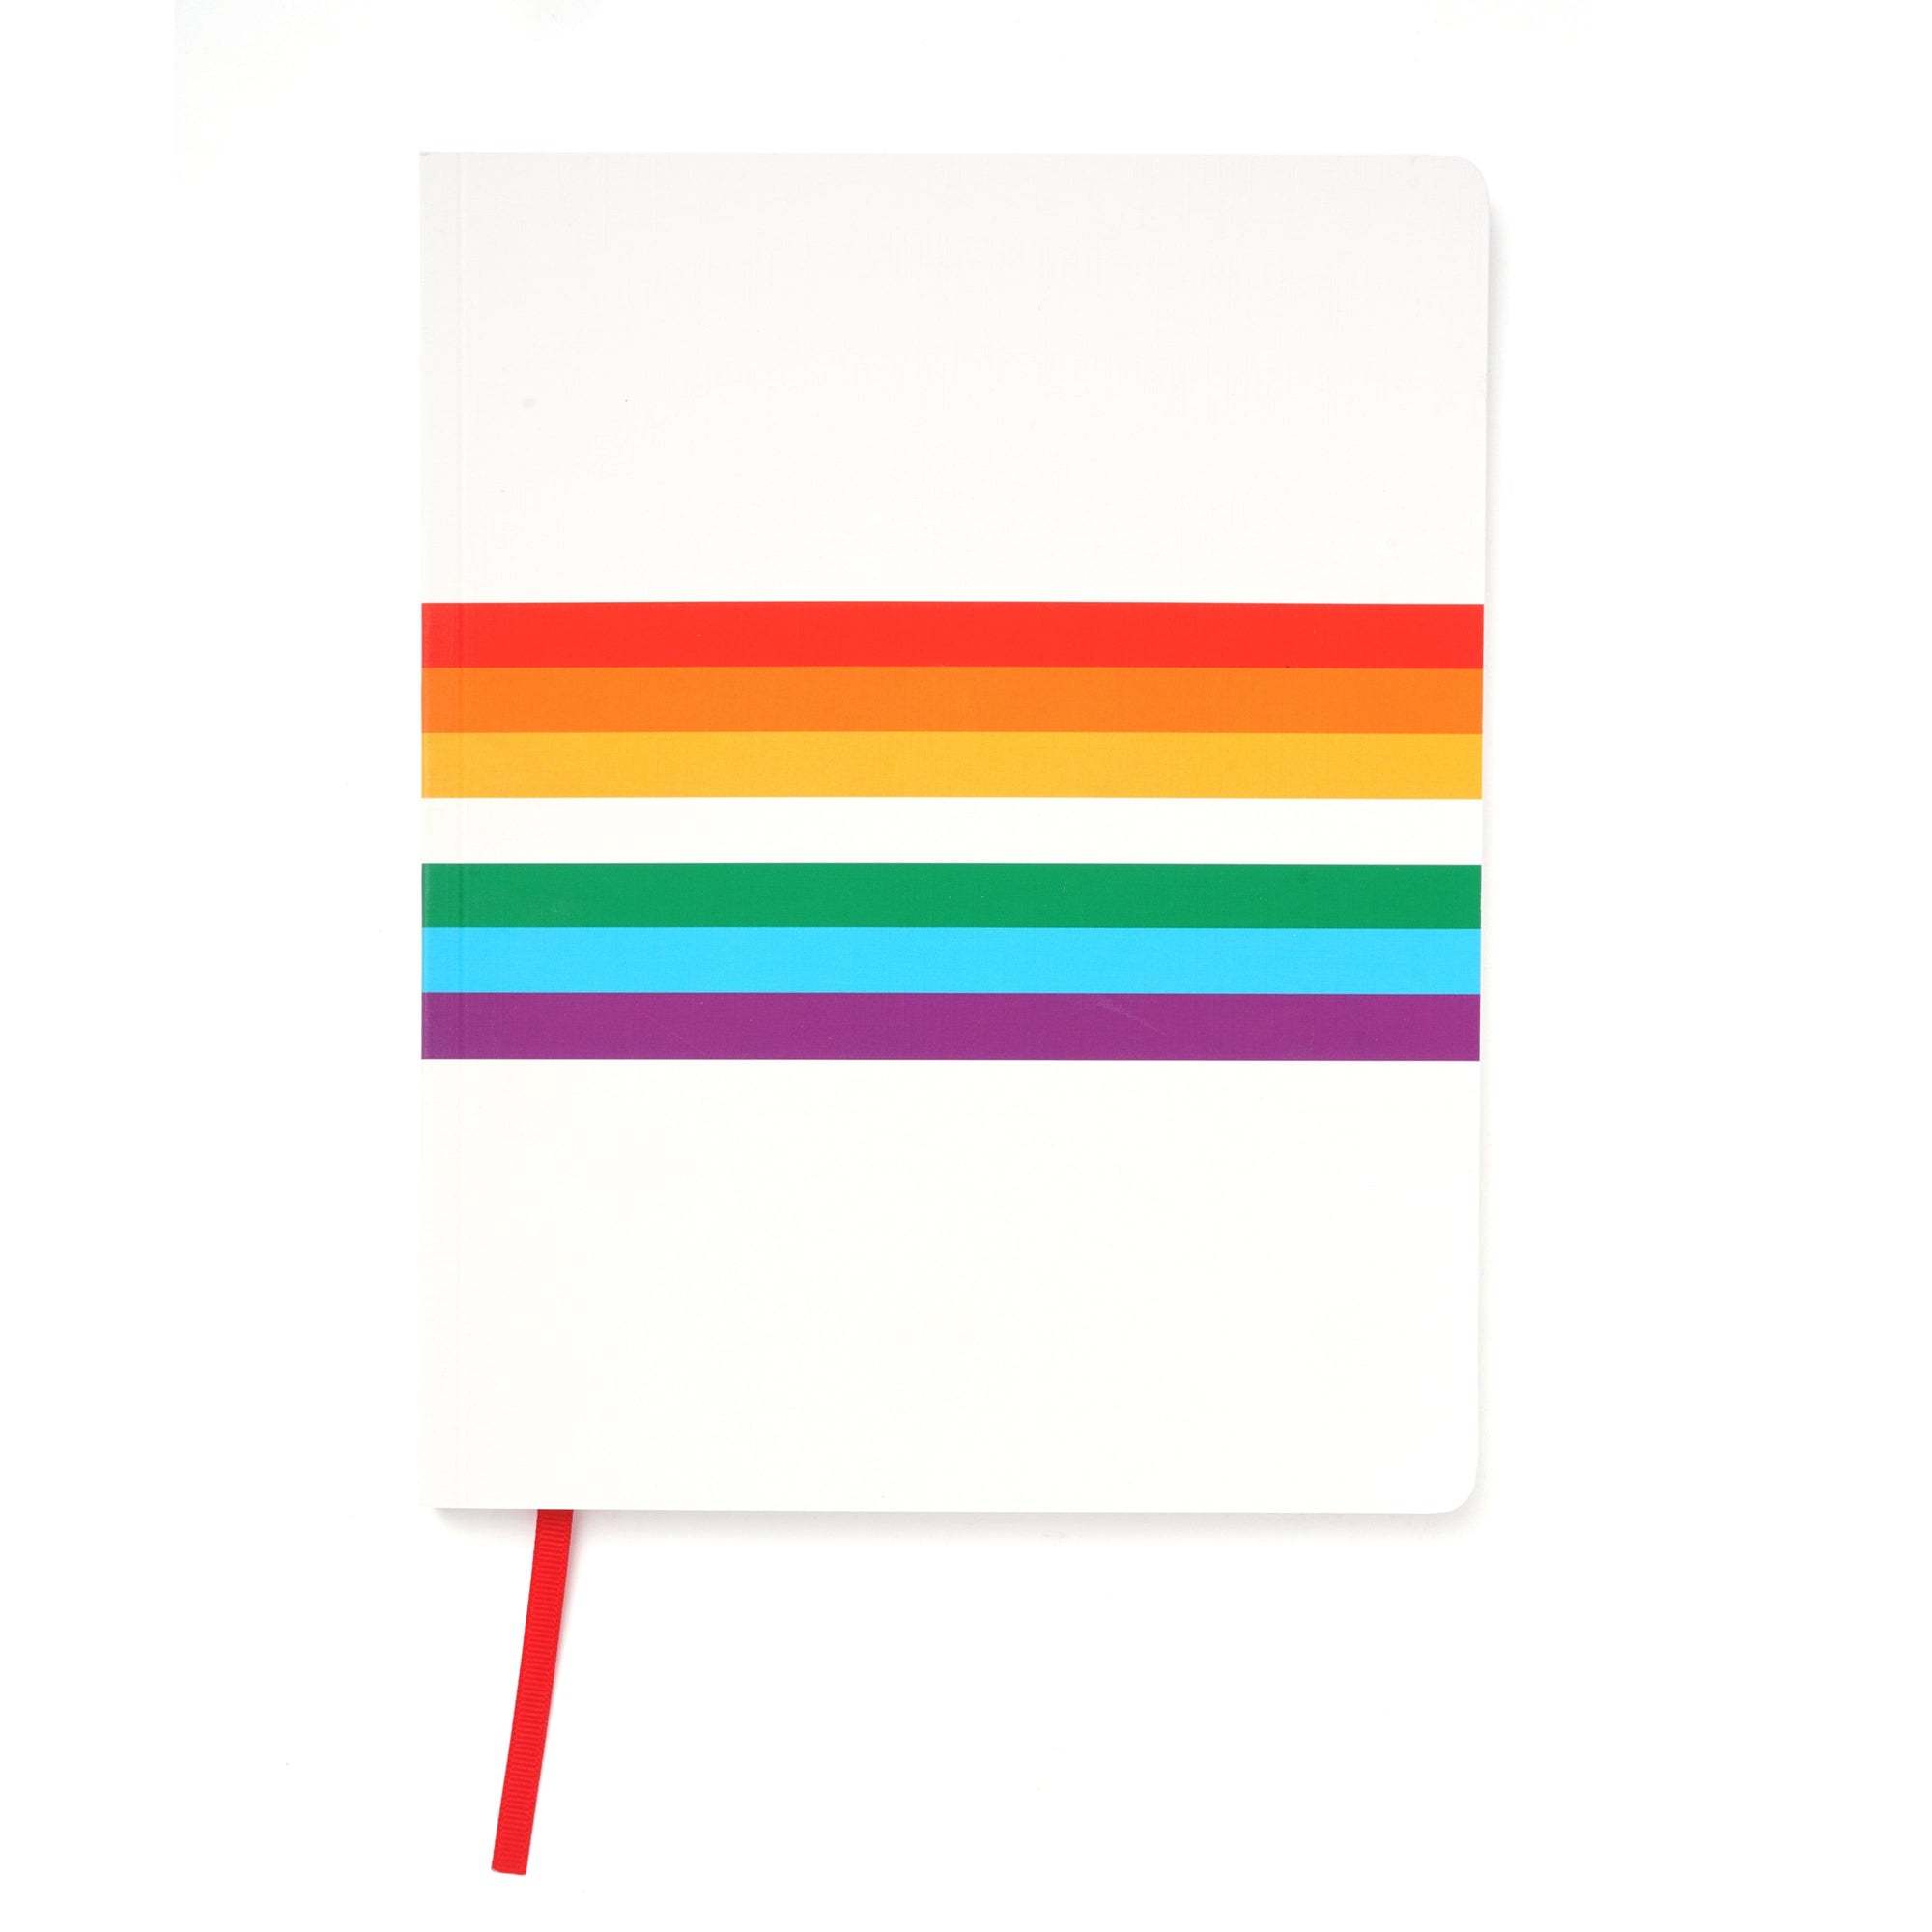 White Rainbow Journal Gartner Studios Notebooks 61398